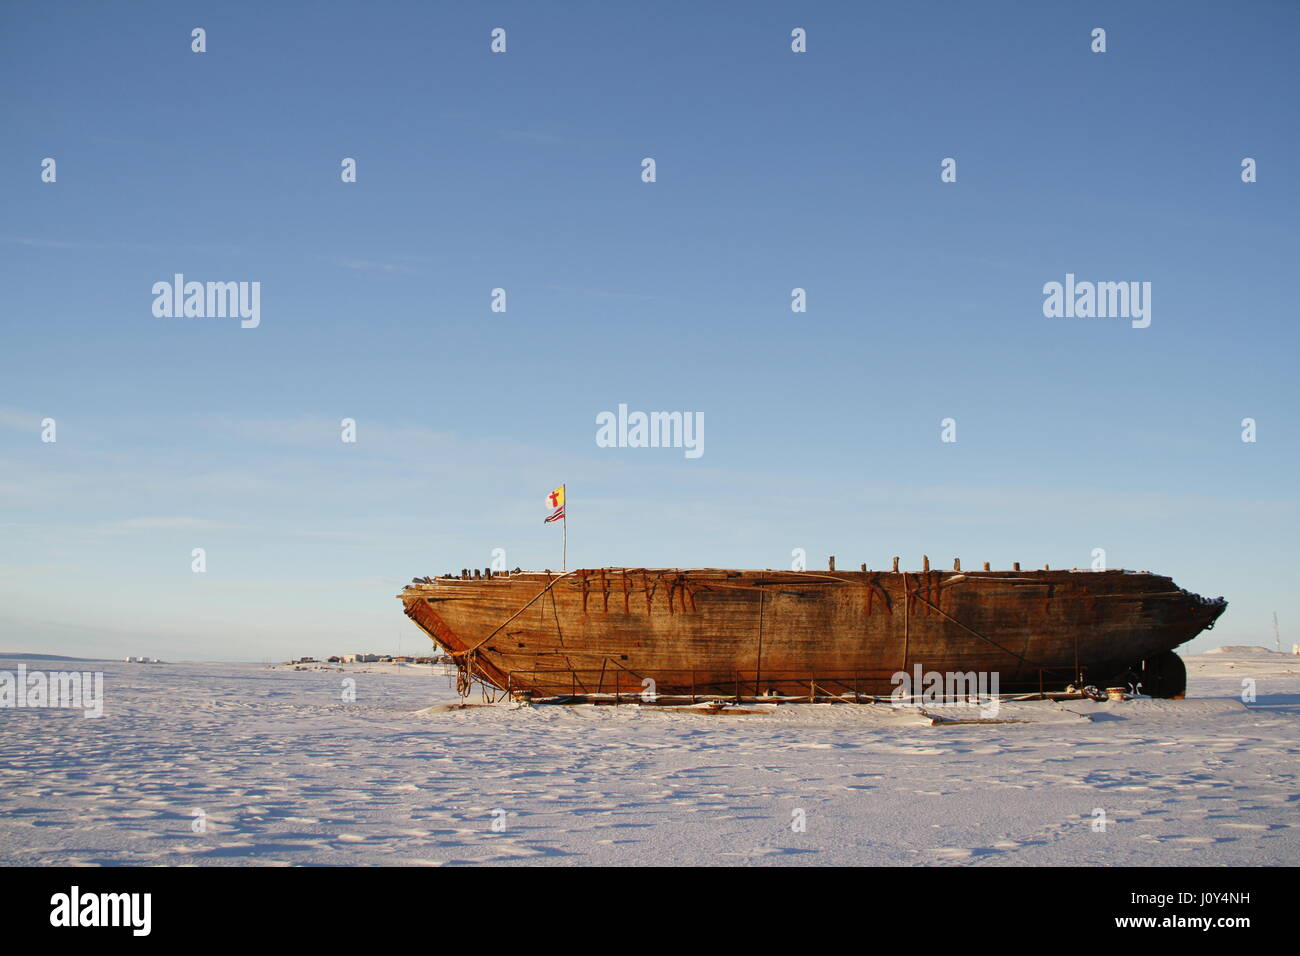 Los restos del naufragio Maud cerca de Cambridge Bay, nombrado por la Reina Maud de Noruega, un buque construido por Roald Amundsen en su expedición al Ártico. Foto de stock